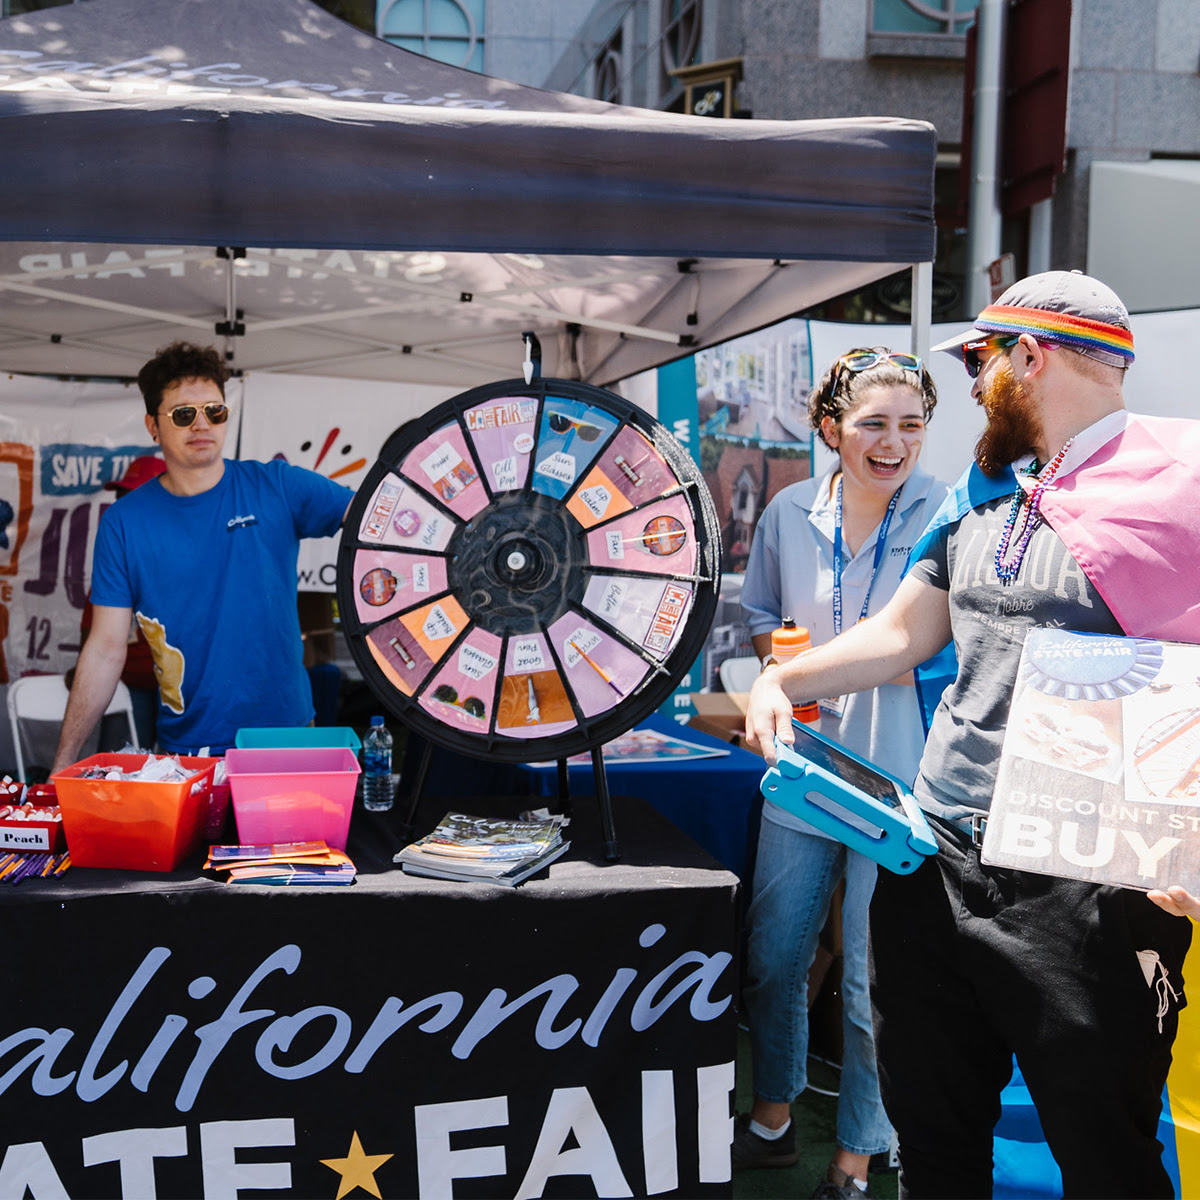 Cal Expo is hosting a Job Fair